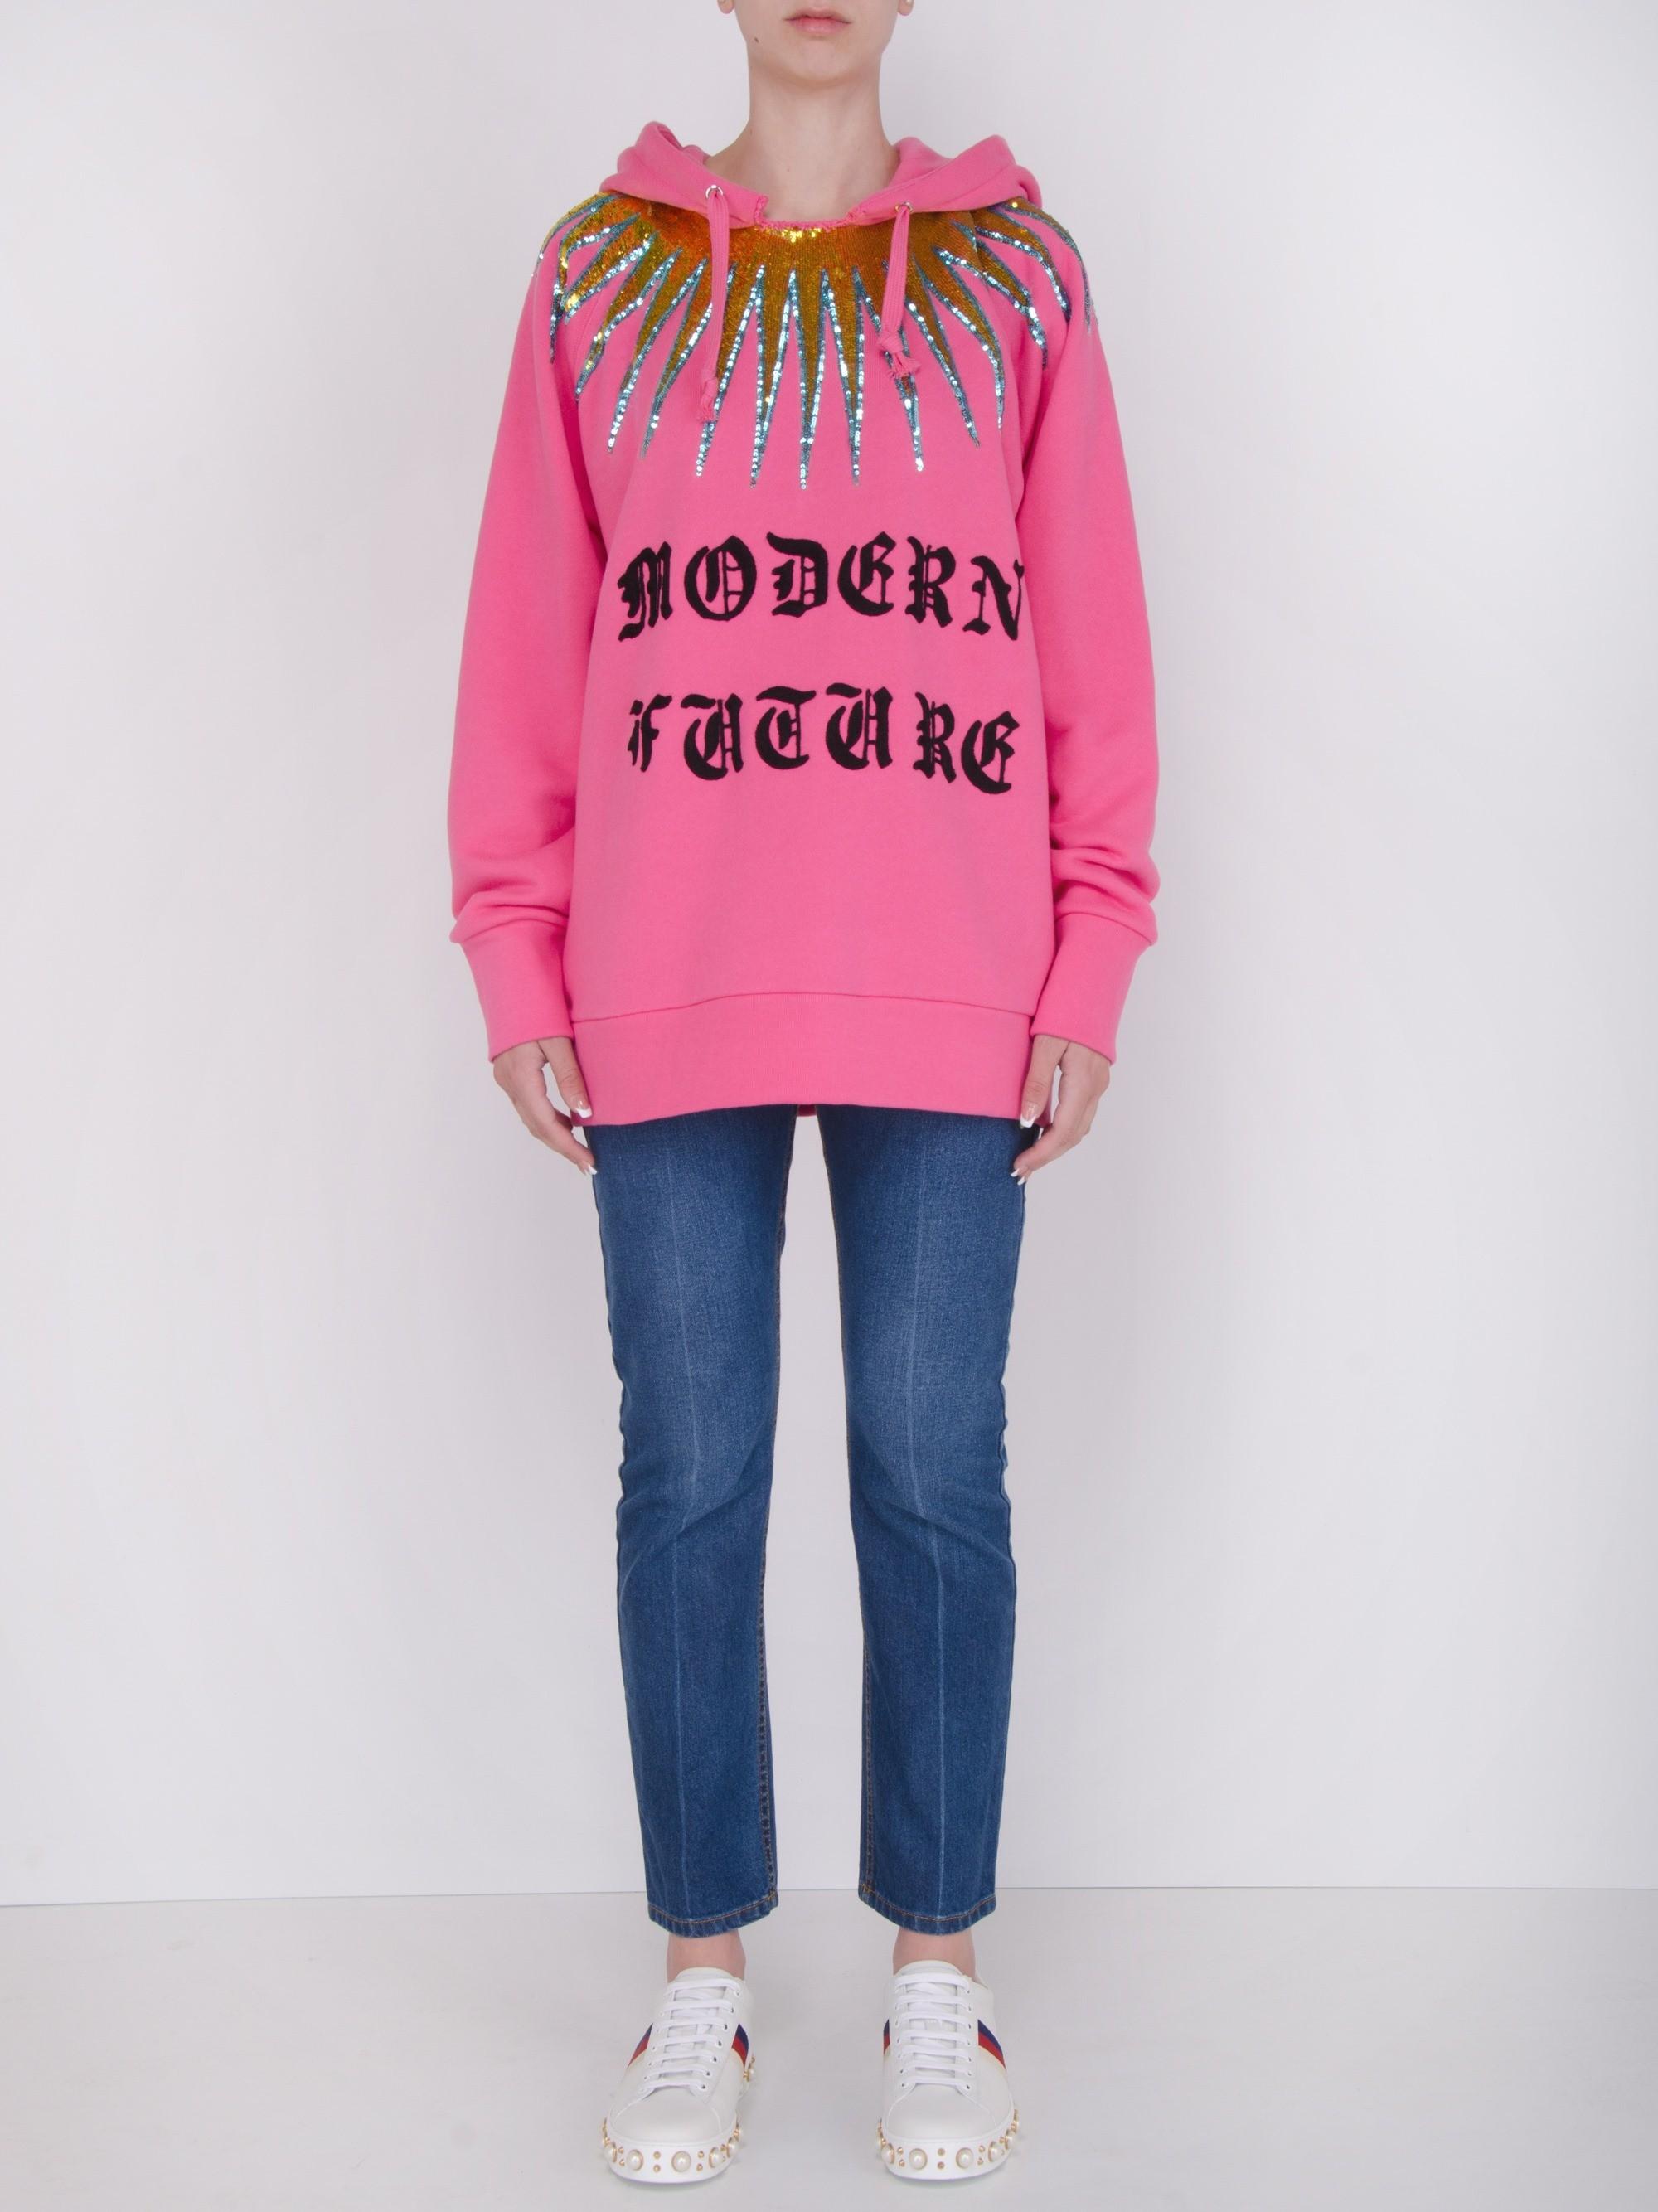 Gucci Modern Future Cotton Sweatshirt in Pink | Lyst